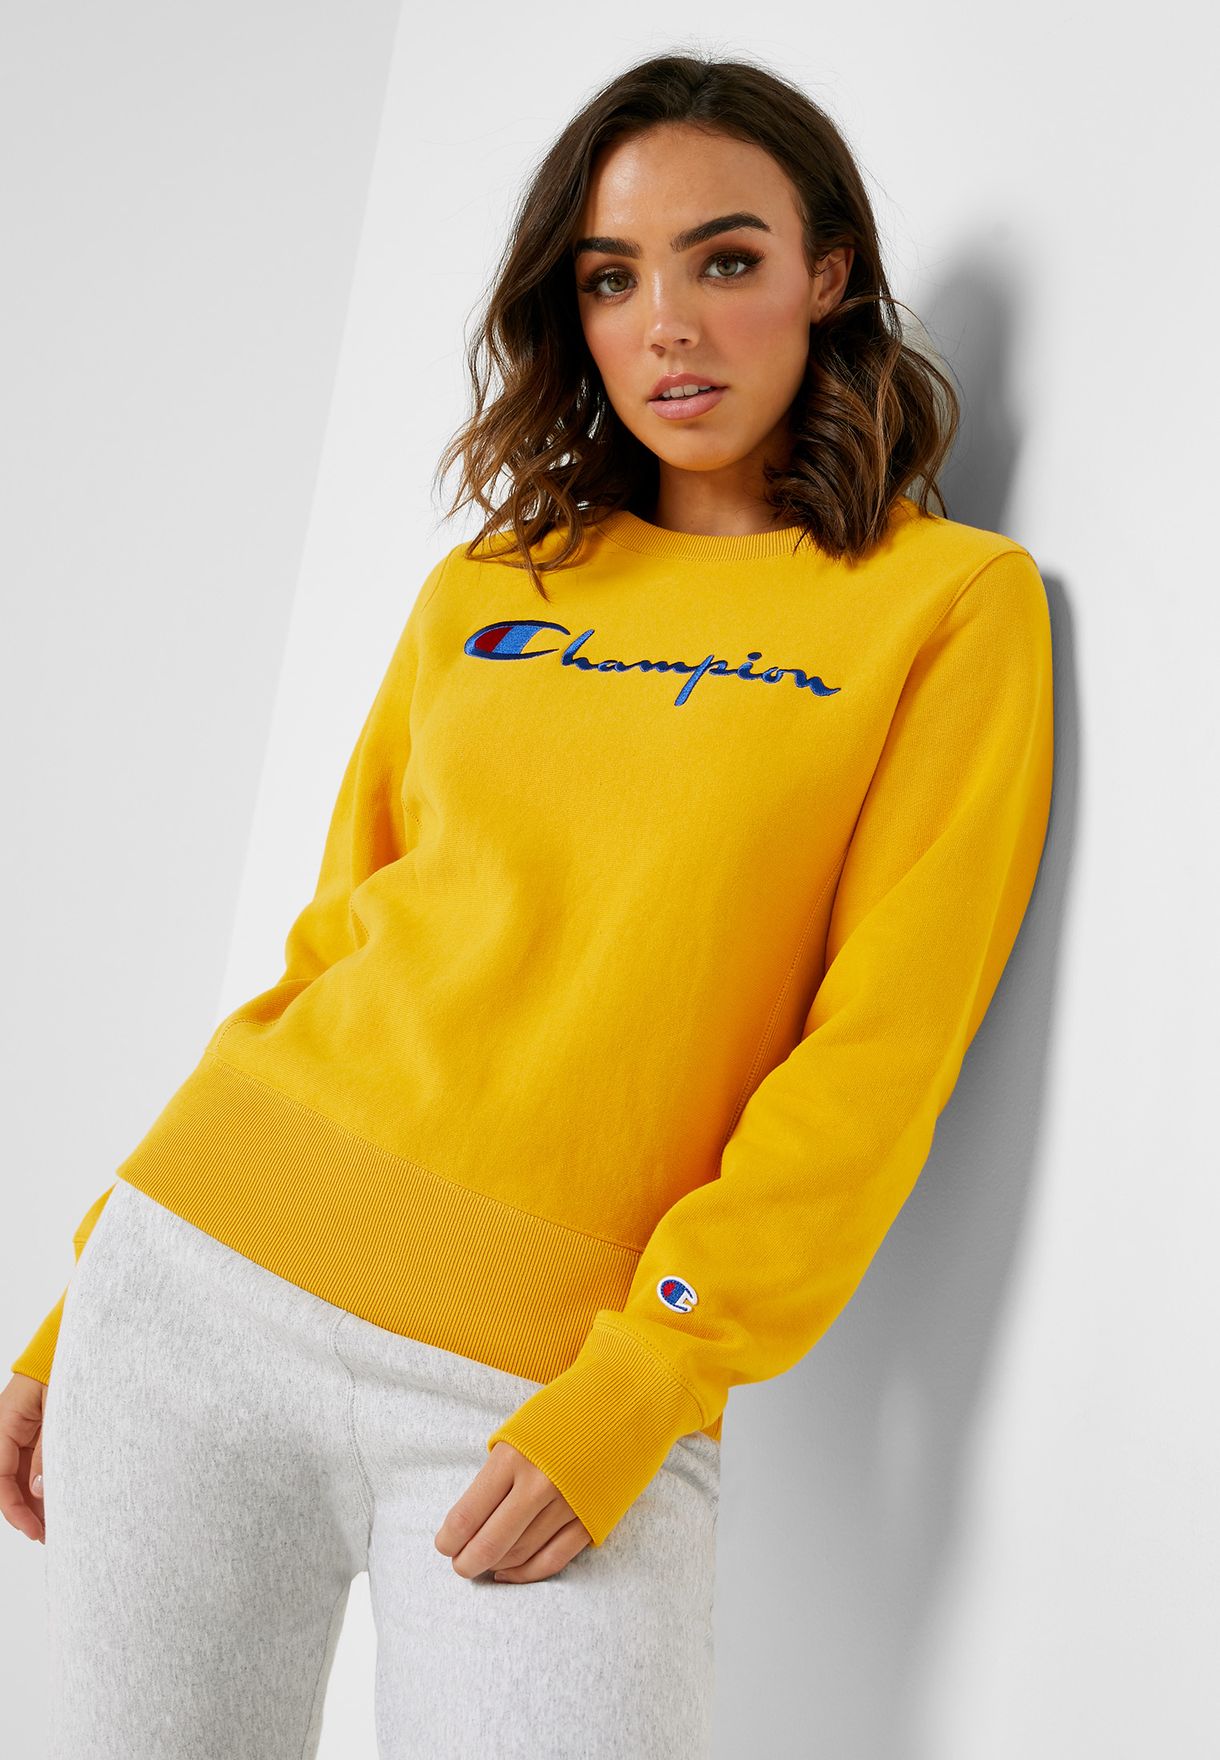 yellow champion sweatshirt women